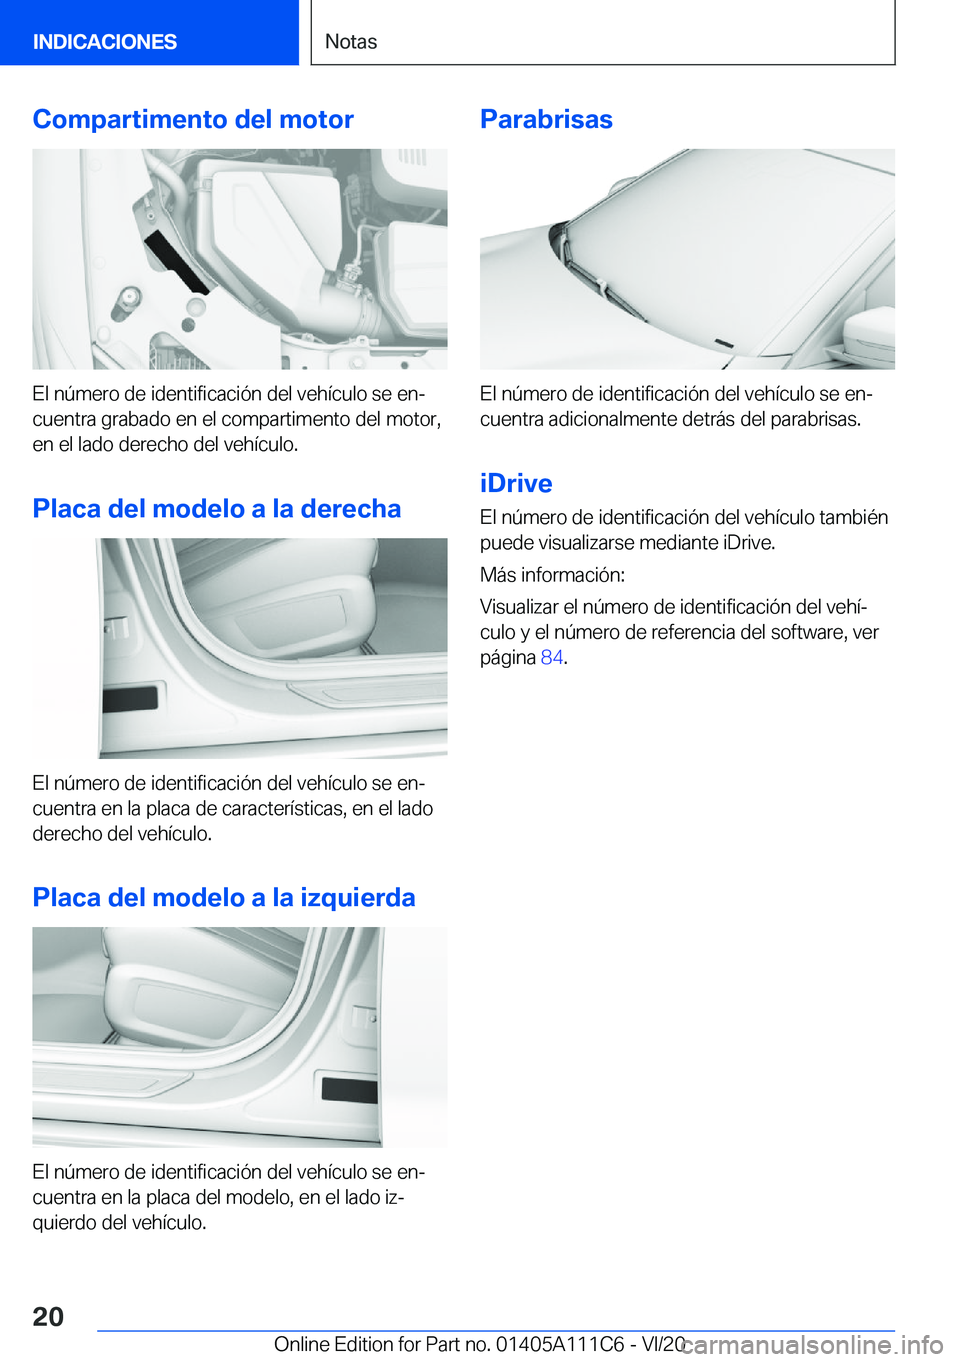 BMW 3 SERIES SEDAN PLUG-IN HYBRID 2021  Manuales de Empleo (in Spanish) �C�o�m�p�a�r�t�i�m�e�n�t�o��d�e�l��m�o�t�o�r
�E�l��n�